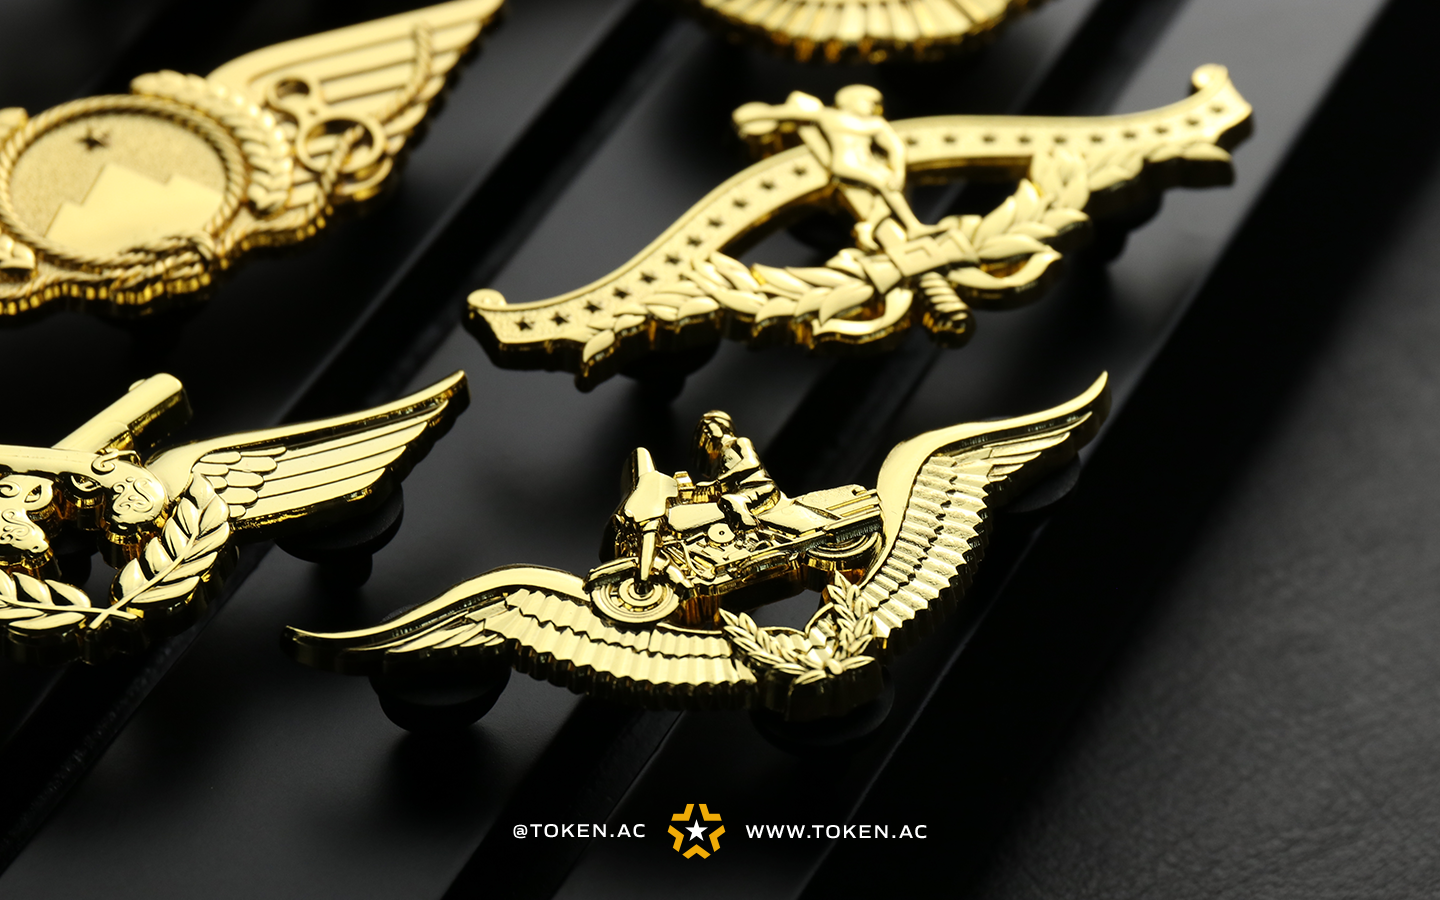 Diversos tipos de brevês e distintivos militares, dourados e prateados, expostos sobre um fundo escuro.